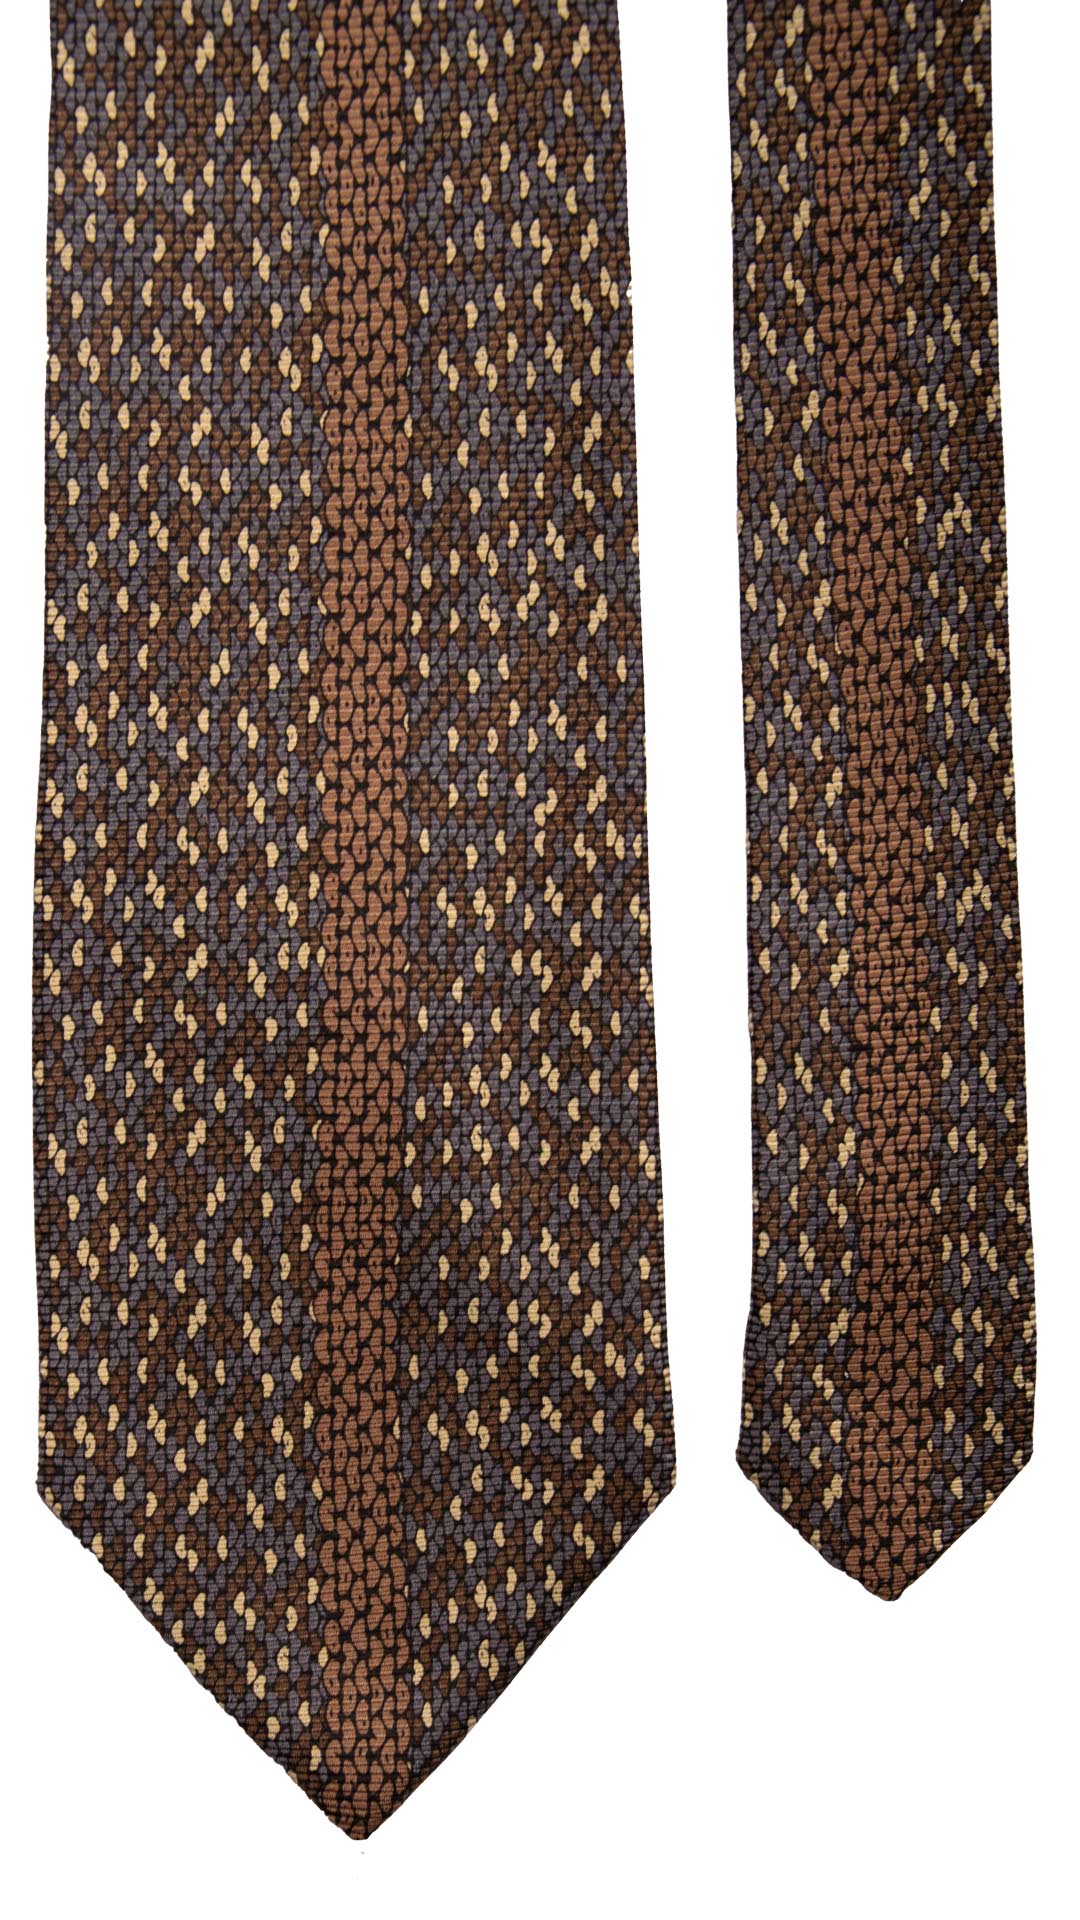 Cravatta Vintage di Seta Jacquard Fantasia Marrone Grigio Beige CV804 pala